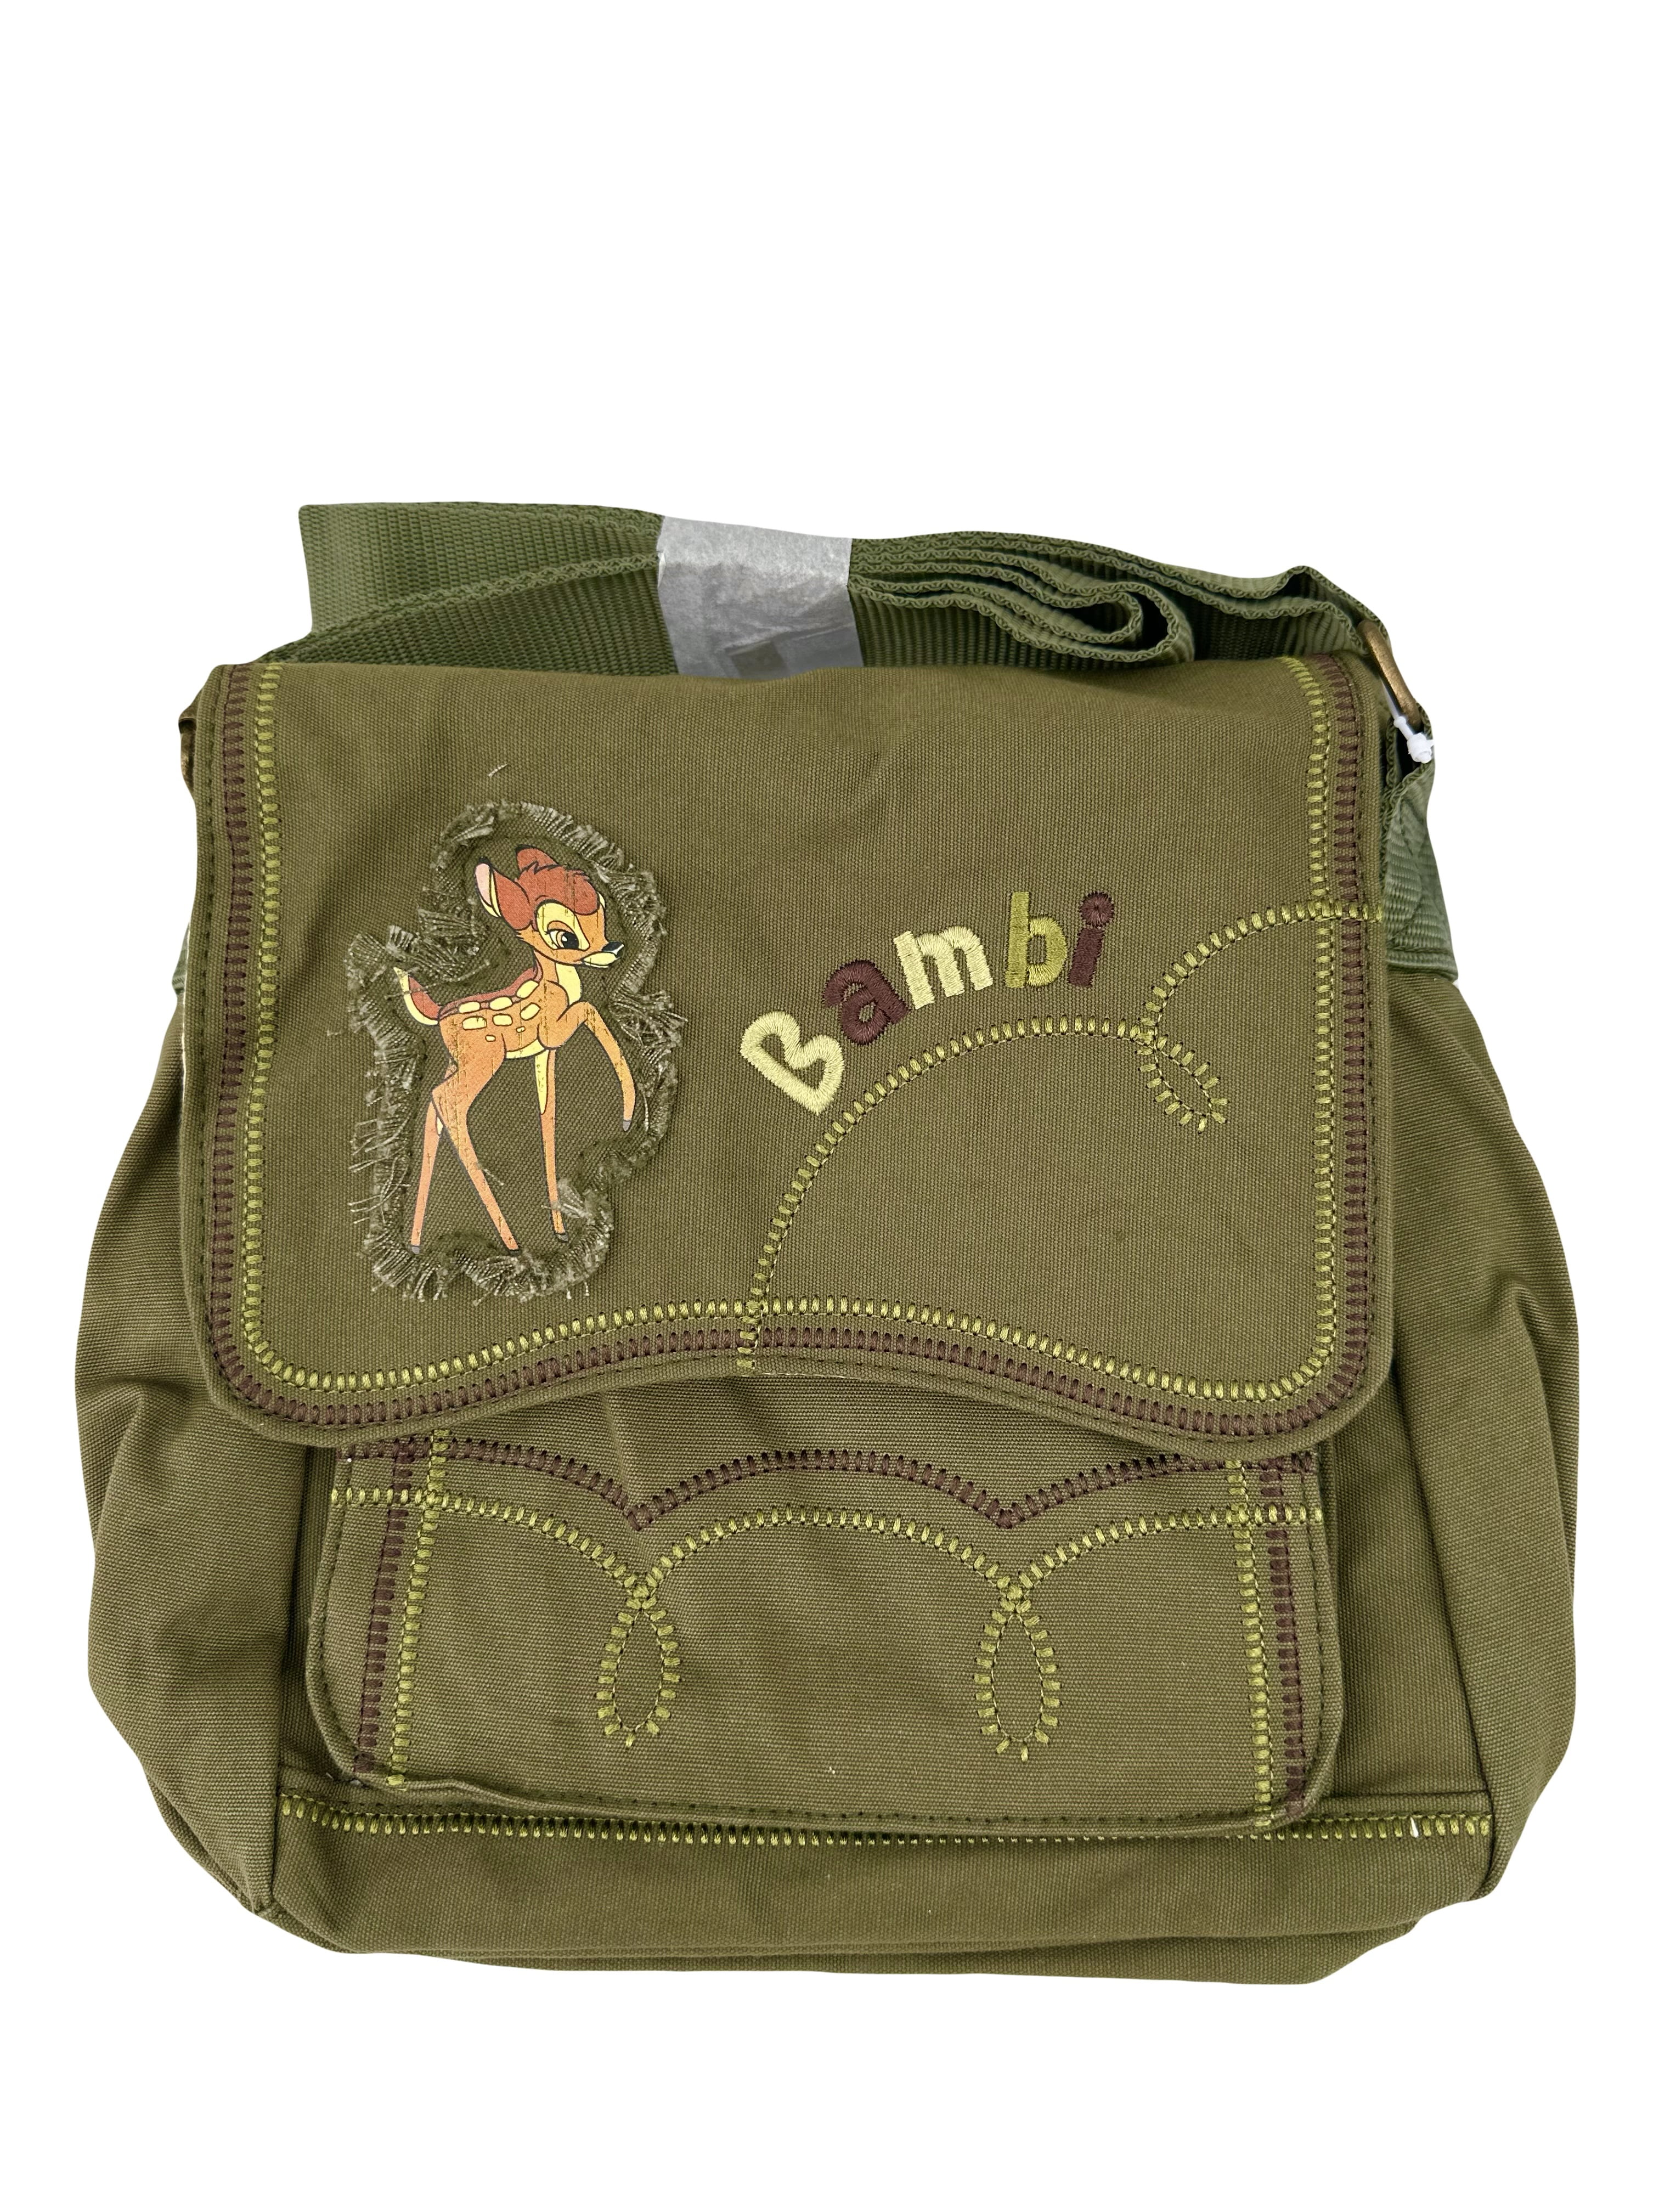 Disney Bambi Messenger Handbag Purse Bag - Camo Green Bambi Purse